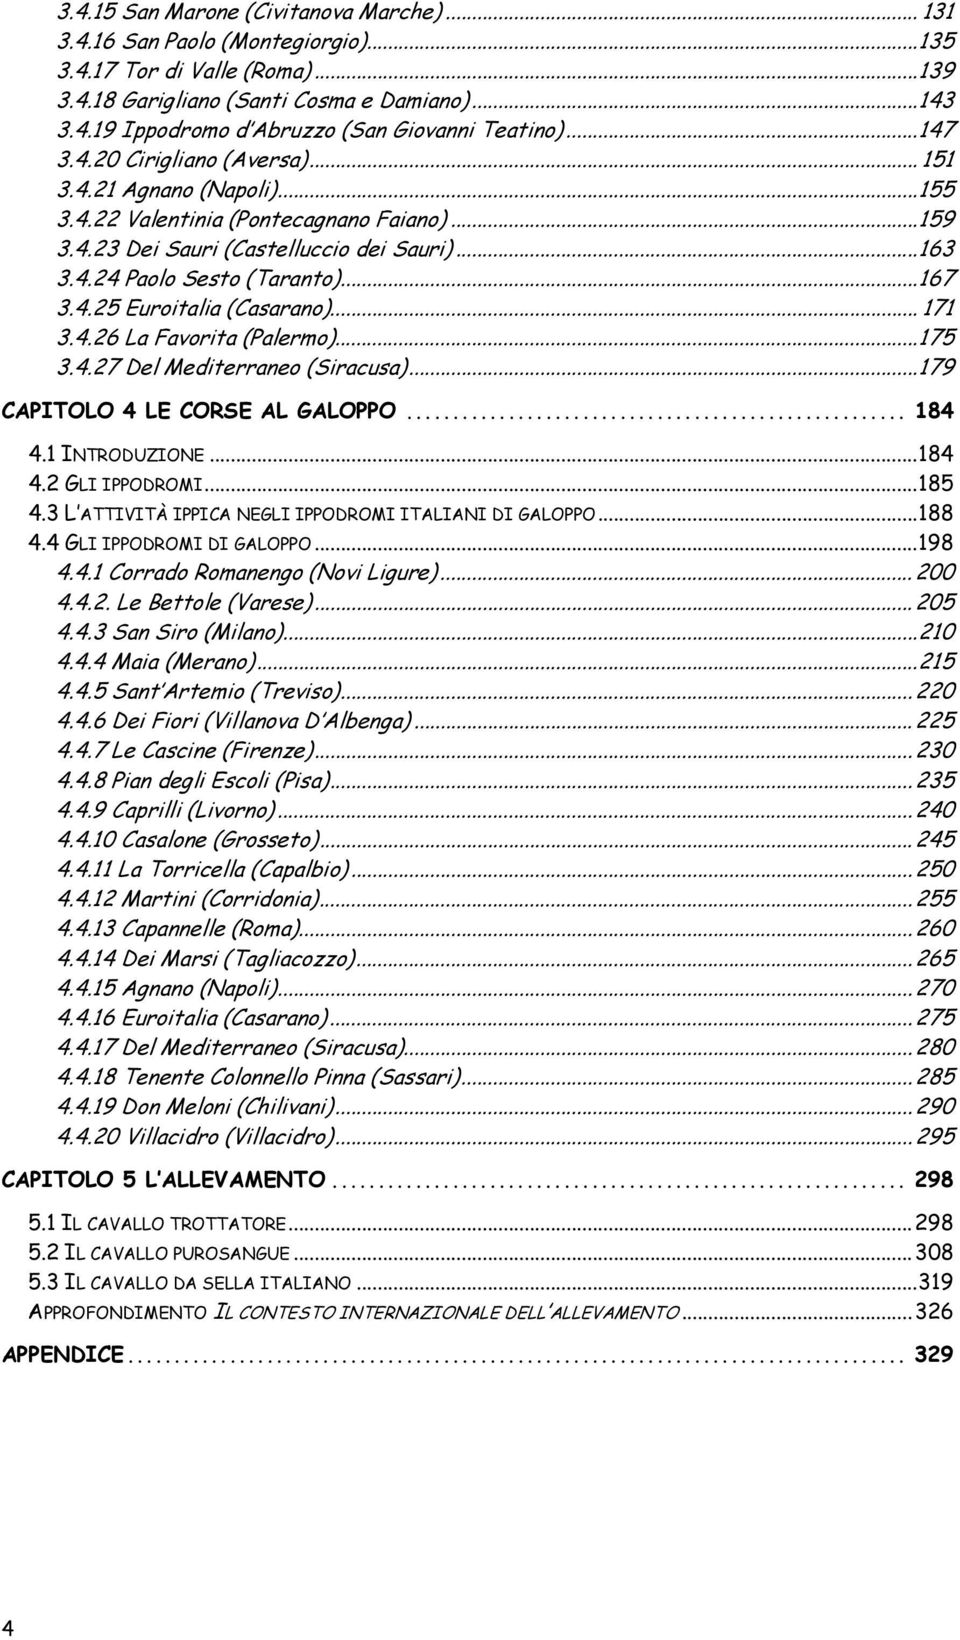 4.25 Euroitalia (Casarano)... 171 3.4.26 La Favorita (Palermo)...175 3.4.27 Del Mediterraneo (Siracusa)...179 CAPITOLO 4 LE CORSE AL GALOPPO... 184 4.1 INTRODUZIONE...184 4.2 GLI IPPODROMI...185 4.